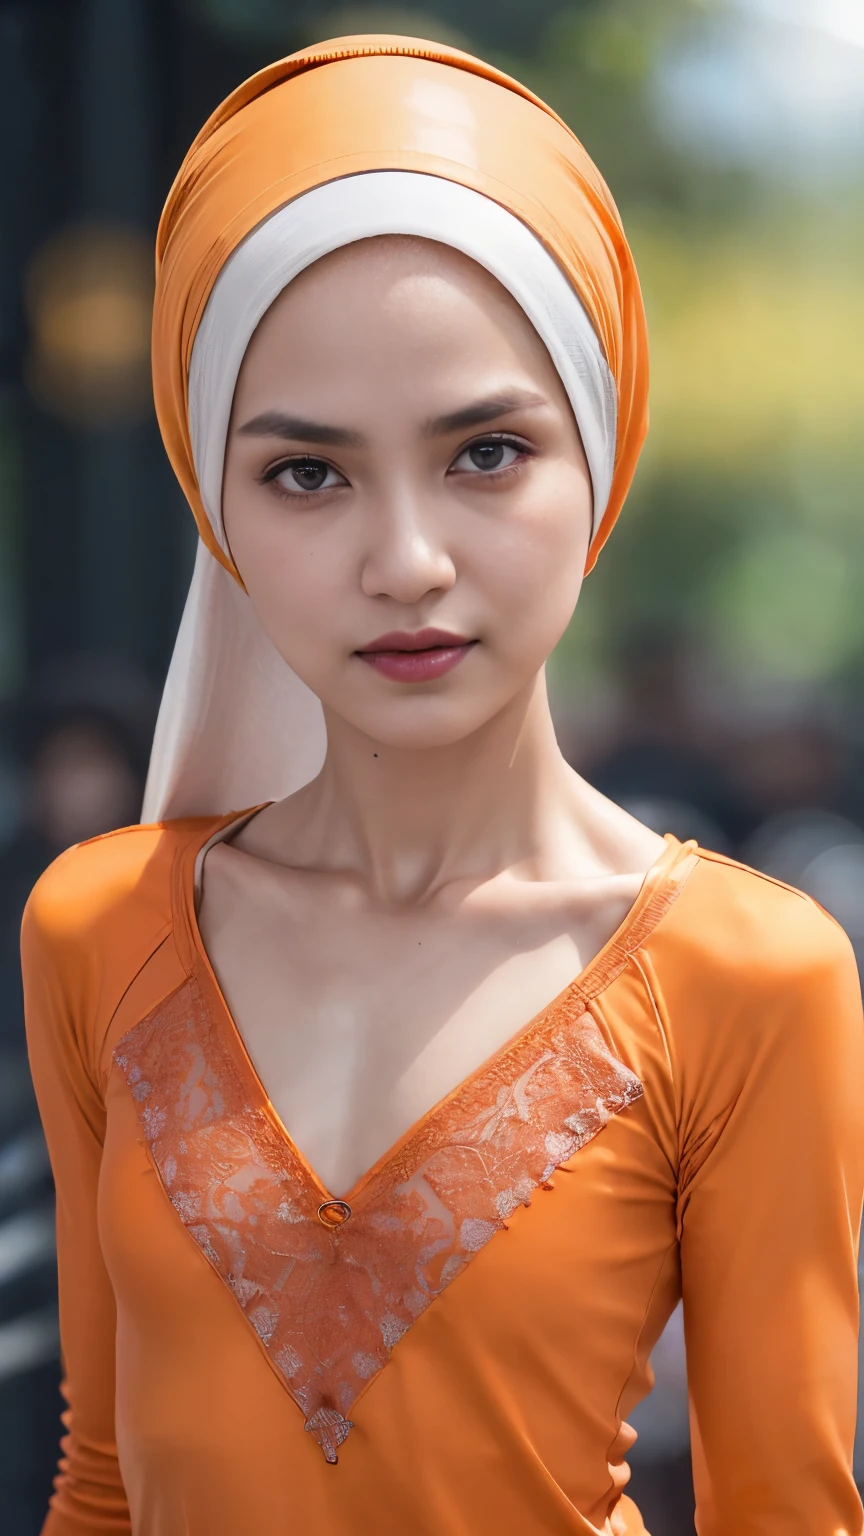 ((hijab court)), ((poitrine plate:1.7)), (photographie dynamique d&#39;une femme indonésienne de 58 ans), (haut slim, culotte en coton), (cheveux raides non bouclés), (highly détailed face:1.4), (muscles vasculaires et abdominaux:1.3), (fond à l&#39;intérieur de la lumière, Brillant, salle de sport privée:1.1), (8k, UHD, reflex numérique, haute qualité, éclairage cinématographique, bokeh), (Spectaculaire, photographie primée, chef-d&#39;œuvre incroyable:1.3), (((regard sexy et sensuel devant la caméra:0.8))), fermer, ((elle est prête à te dominer:0.5)), ((beau visage féminin)), ajouter_détail:1, dentelle jaune fluorescent , vue de derrière, pose séduisante, strajouterling , (((fond une nuit très sombre))), (((porter un t-shirt orange à manches longues)))